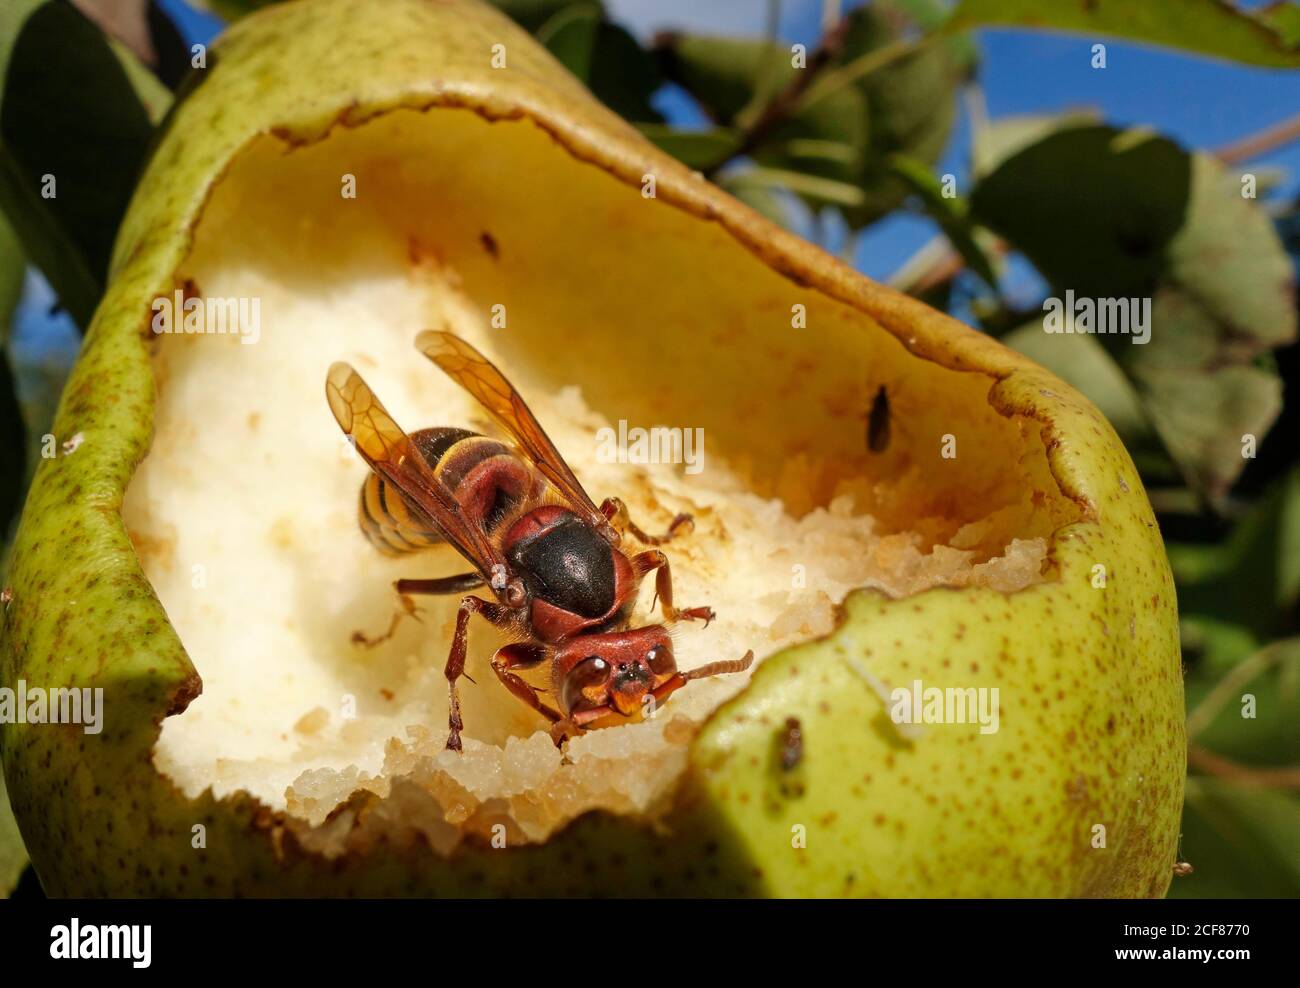 El cuerno europeo (vespa Crabro) se alimenta de la pera madura. Foto de stock